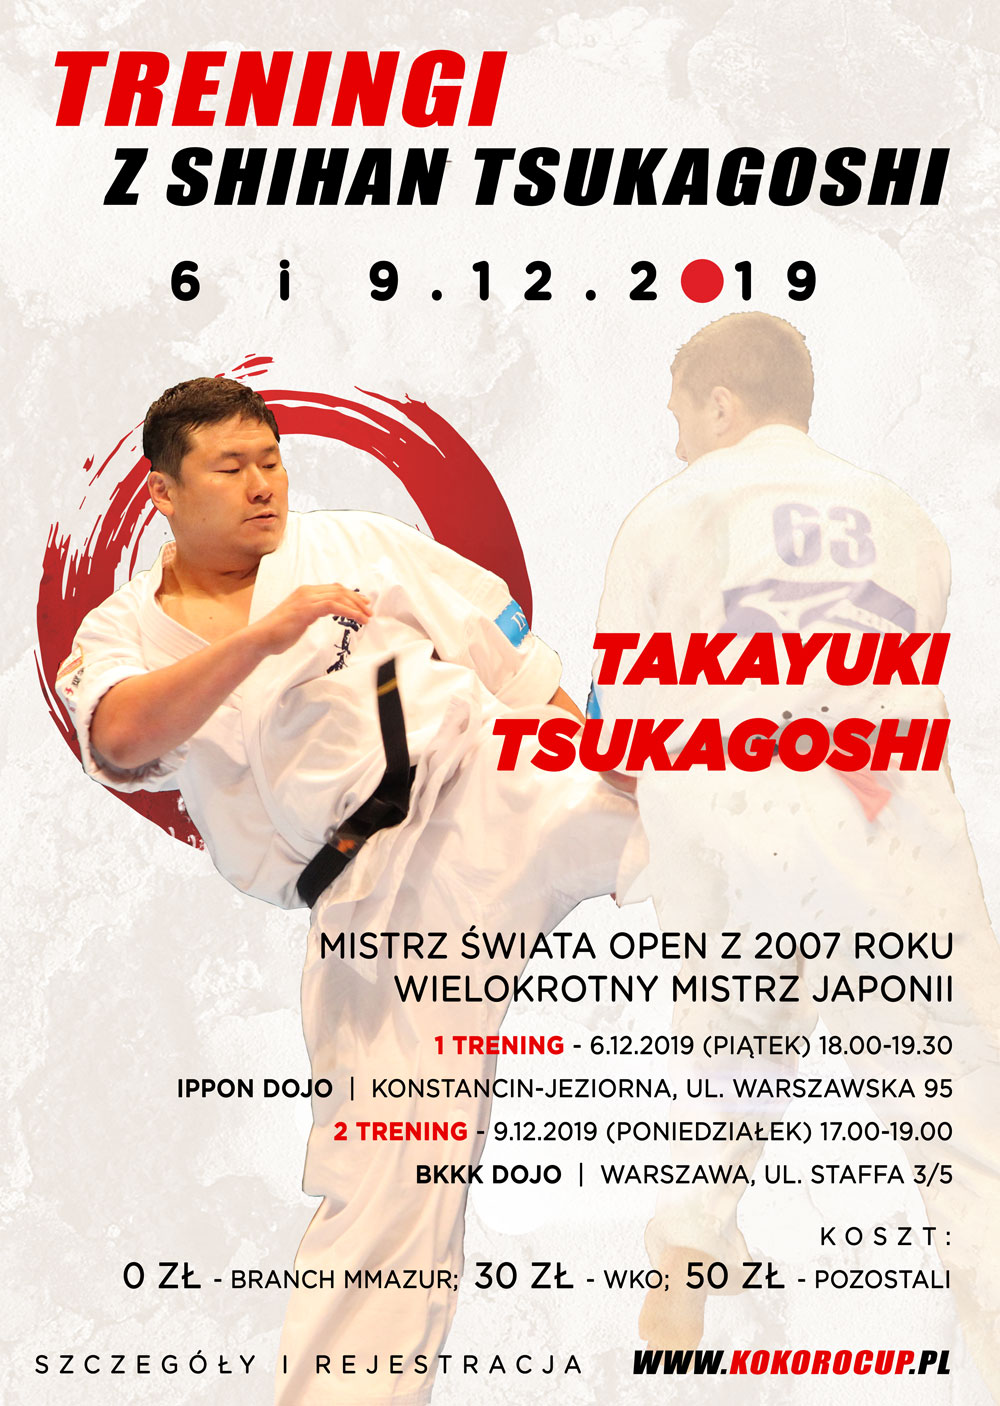 Treningi Tsukagoshi 2019